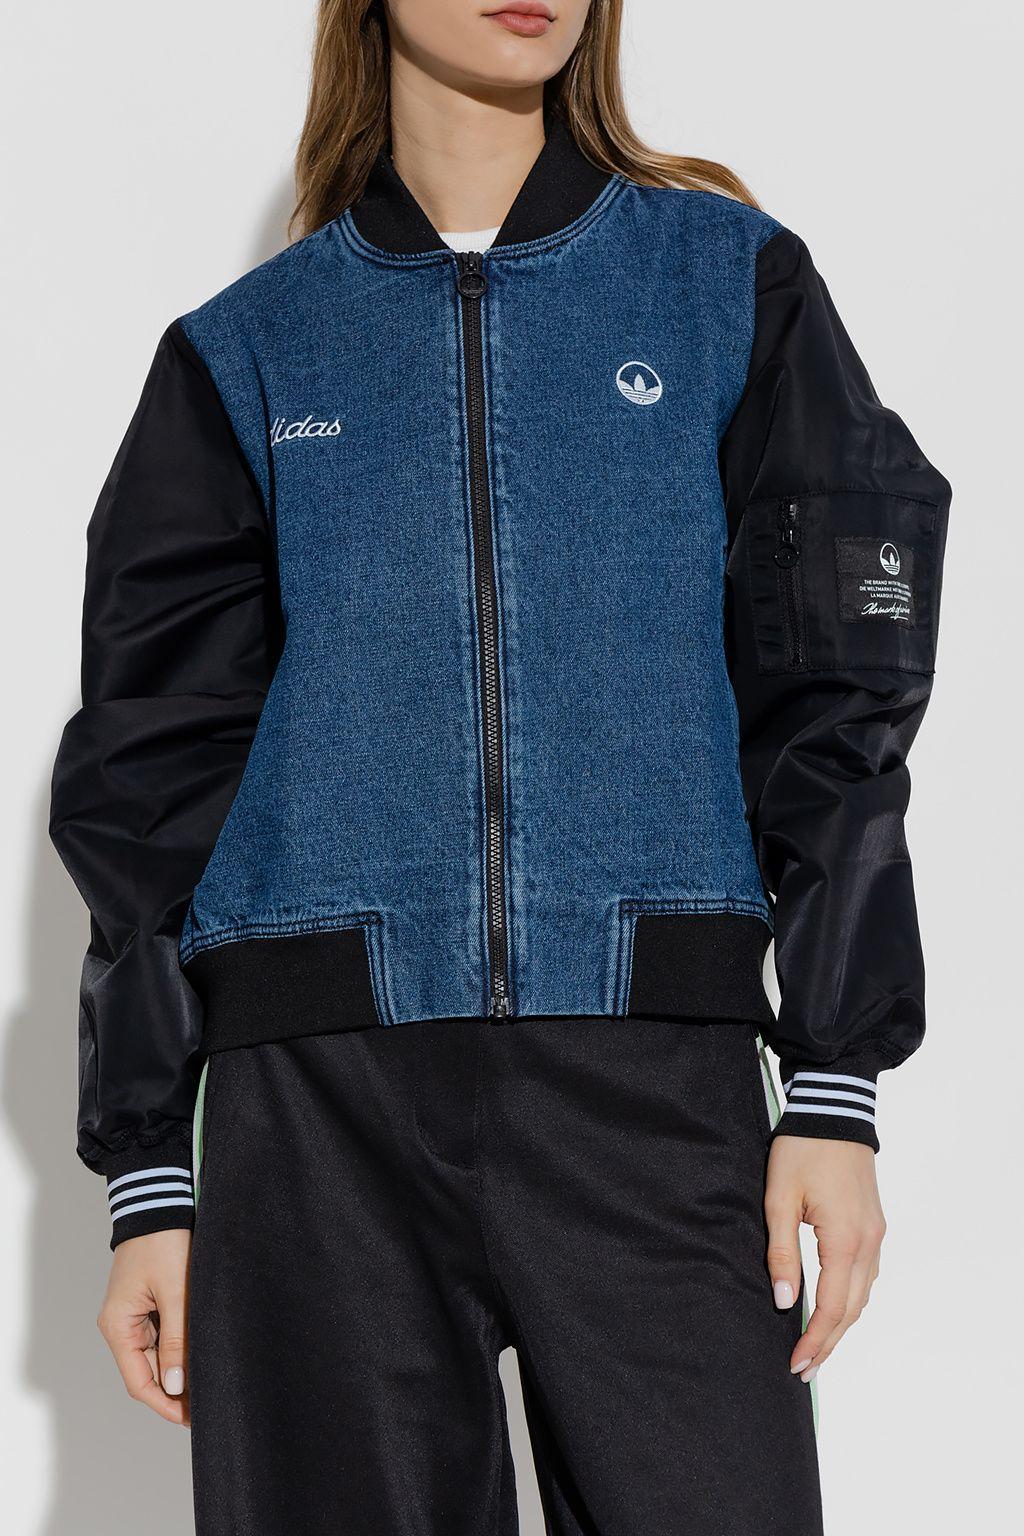 adidas Originals Collegiate Denim Jacket in Blue | Lyst